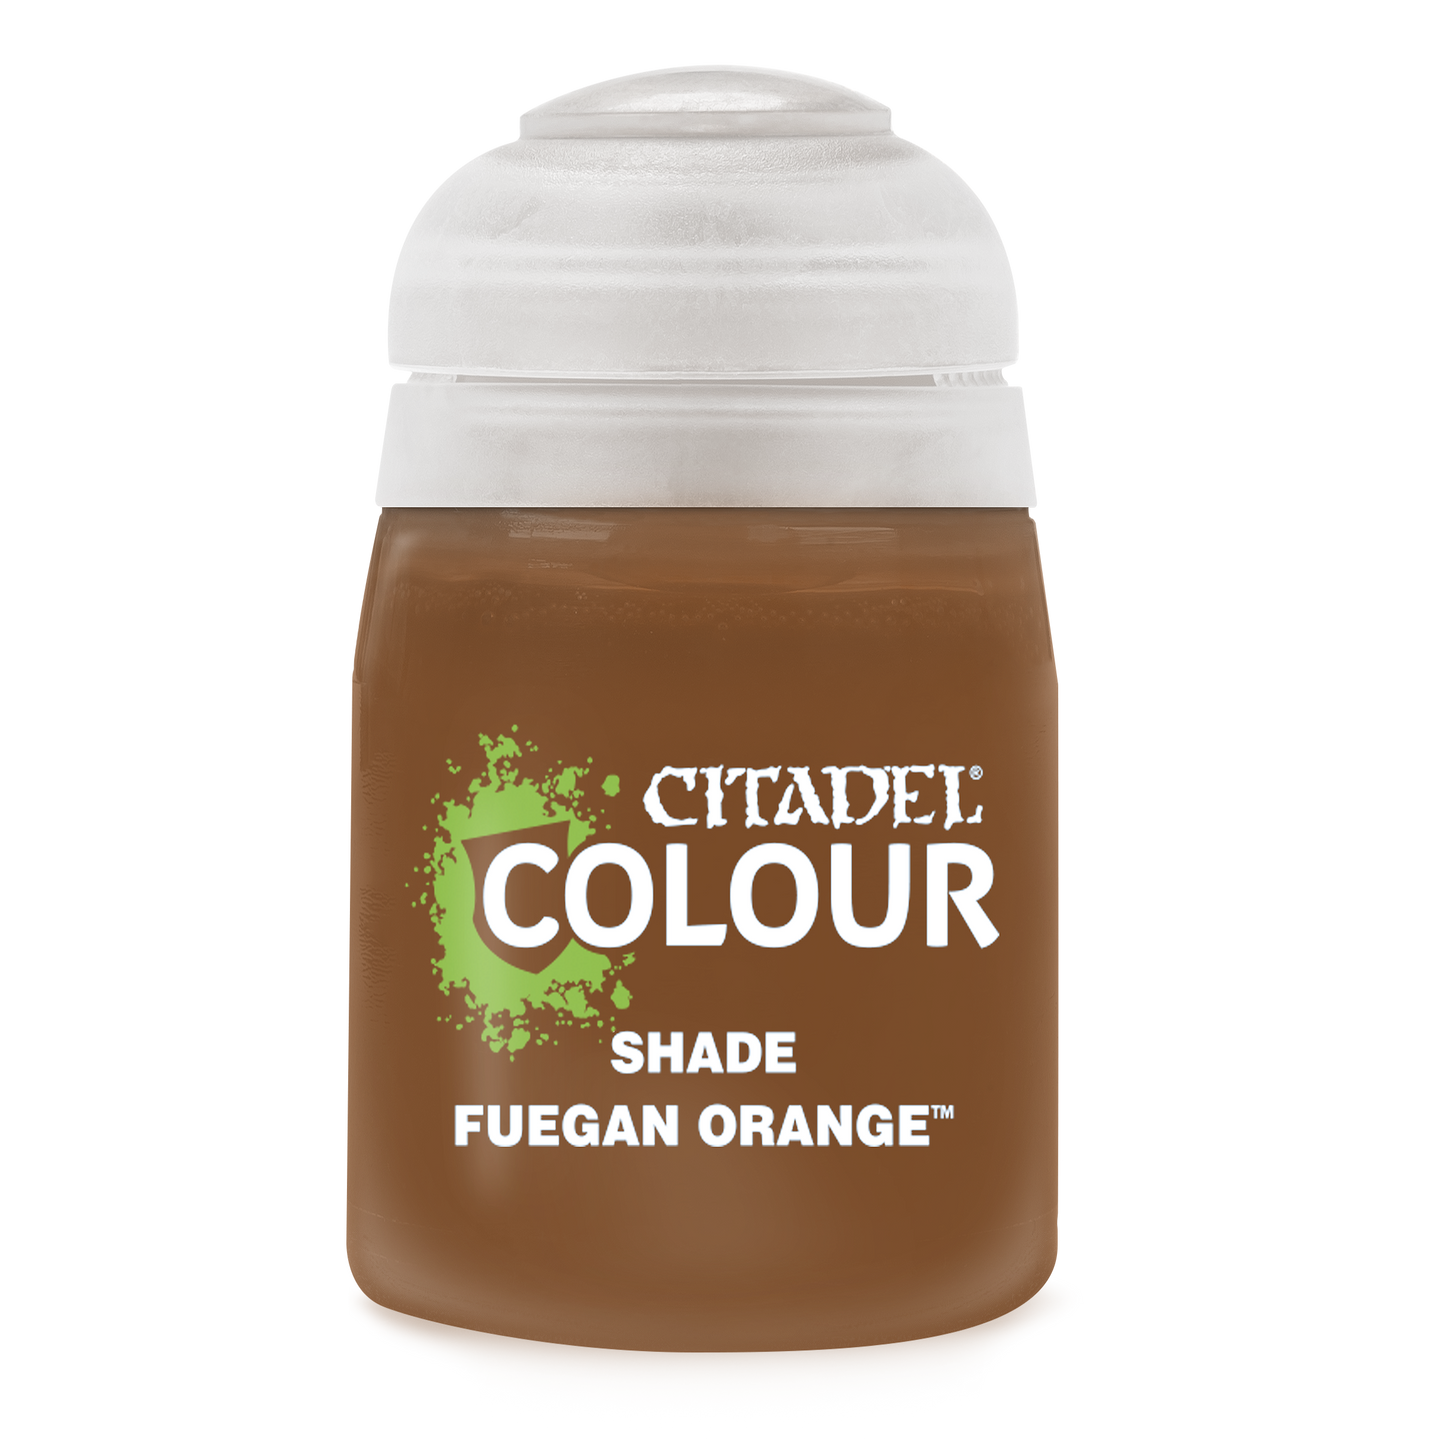 Shade: Fuegan Orange